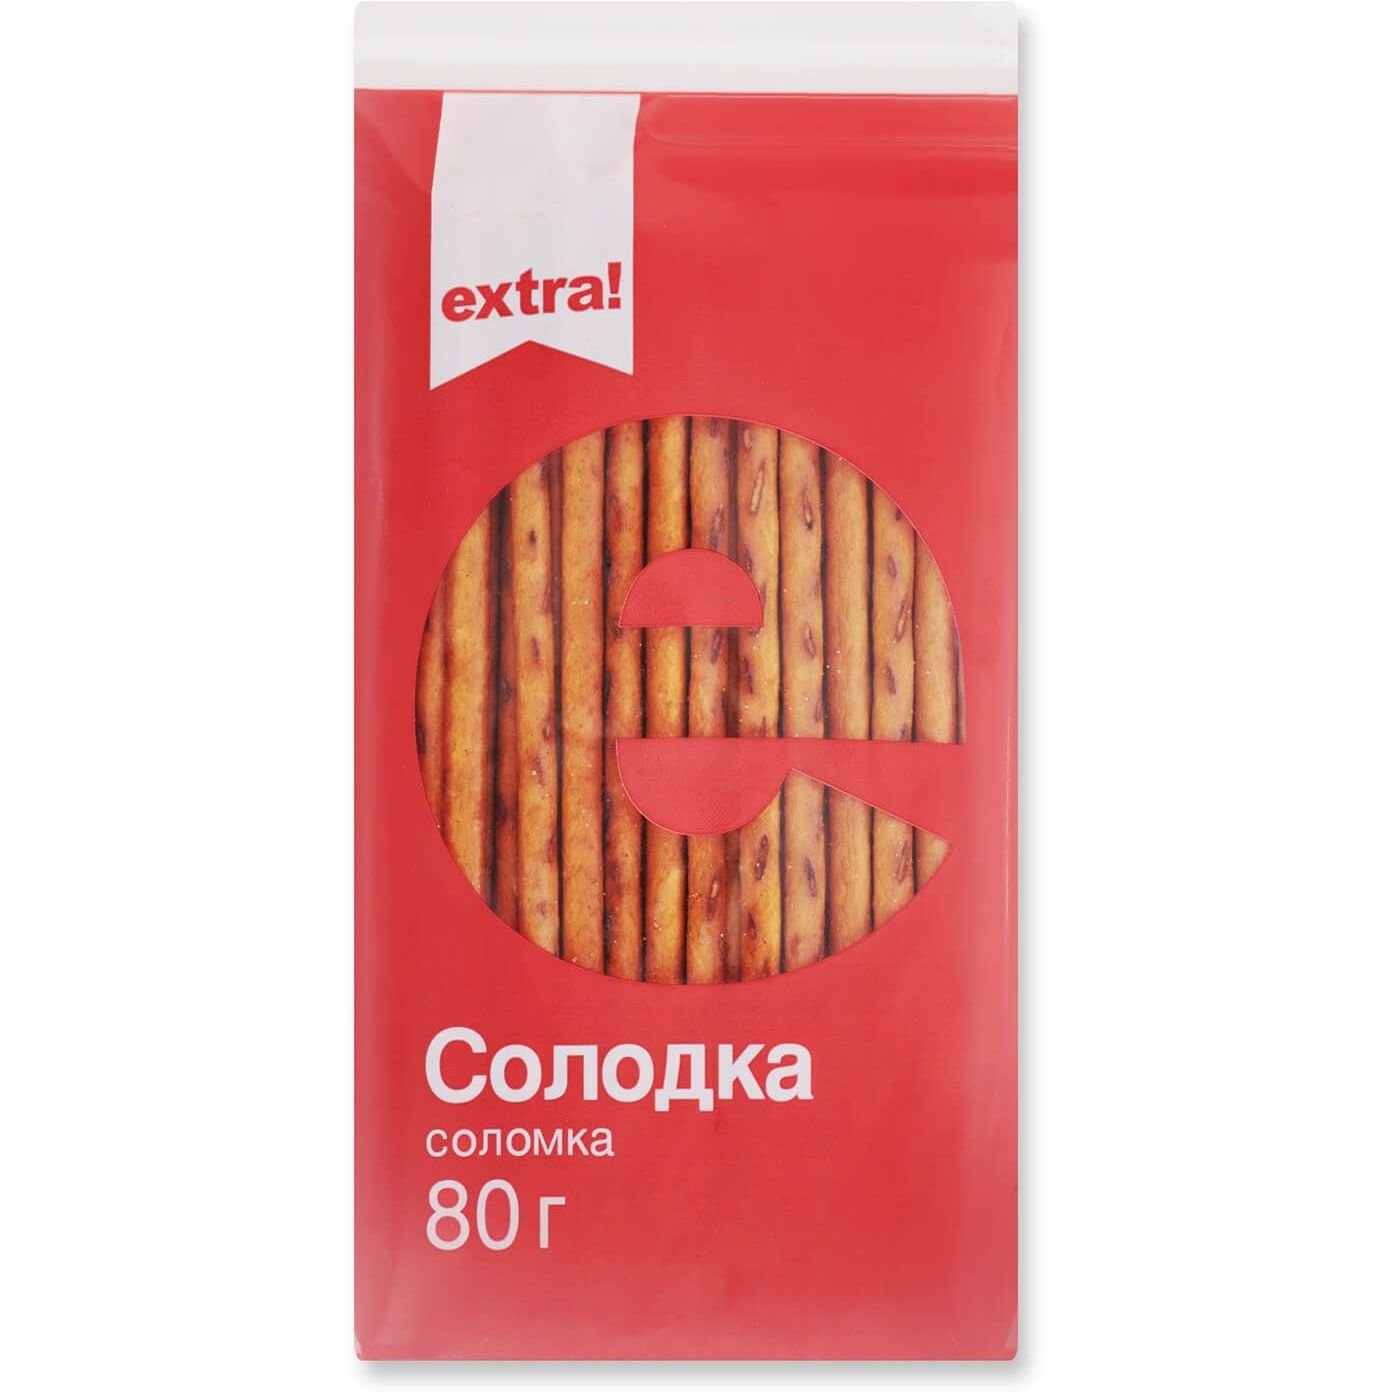 Соломка Extra! сладкая, 80 г (483700) - фото 1